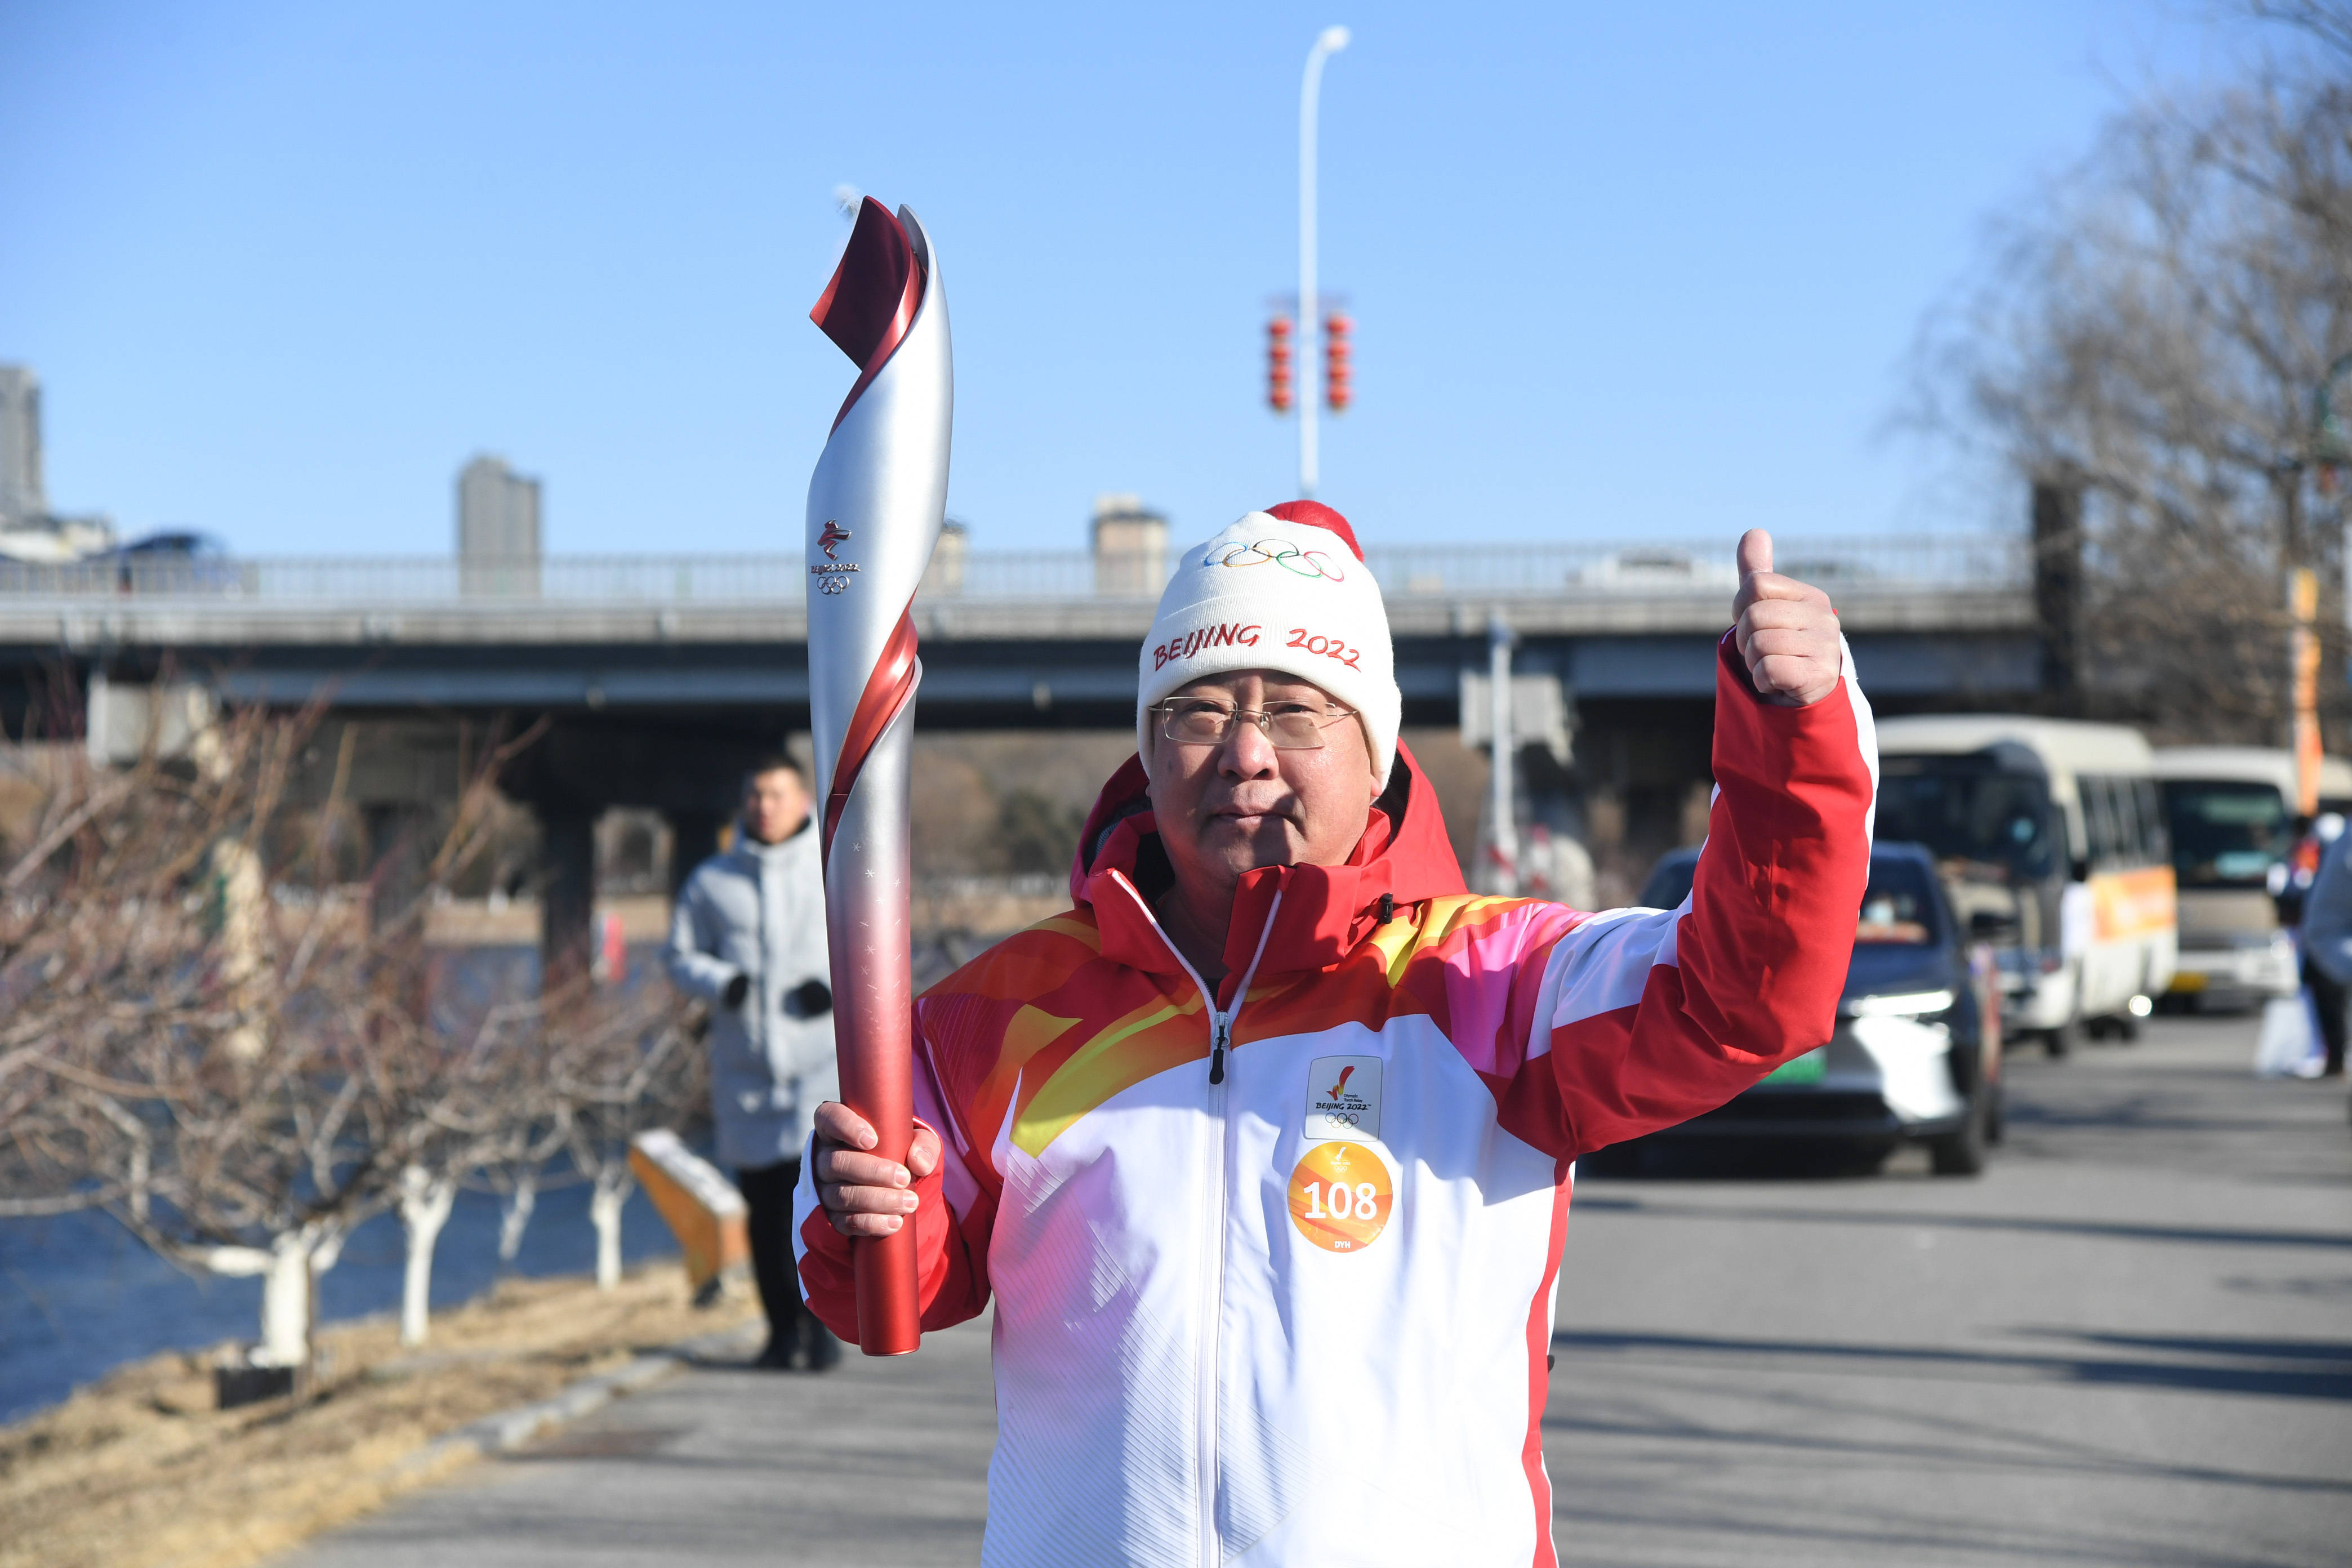 北京冬奥会火炬在大运河森林公园传递